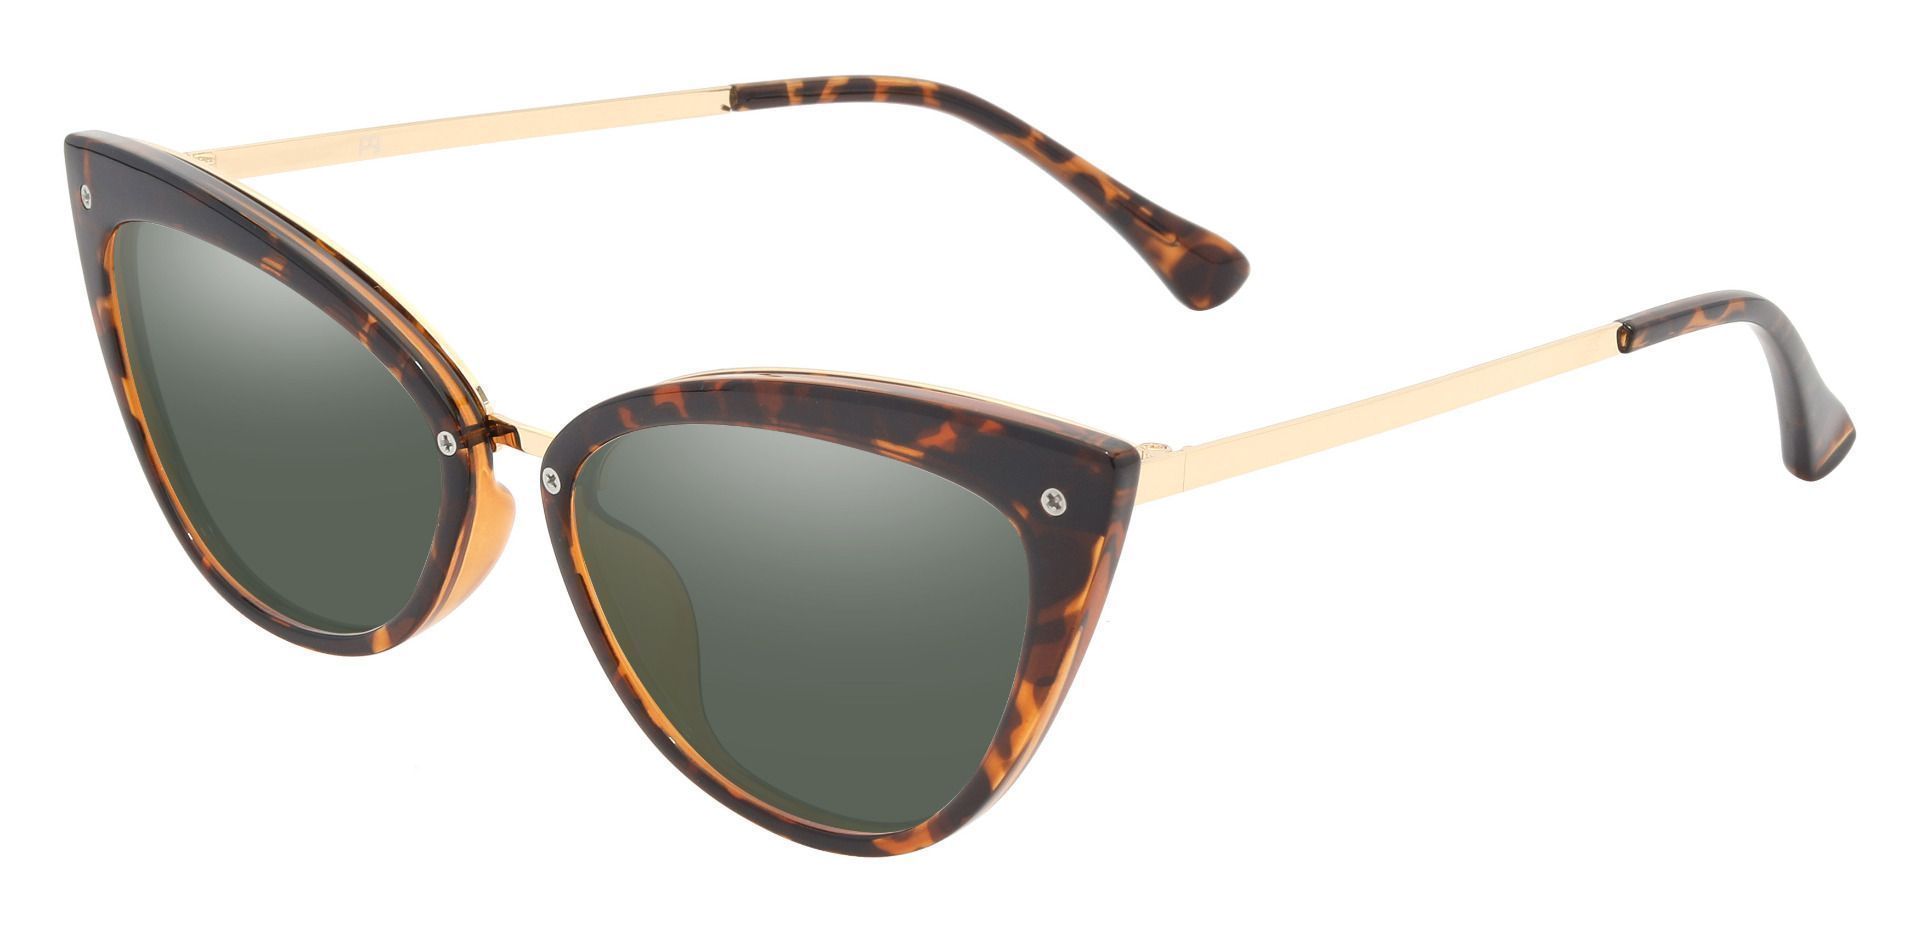 Glenda Cat Eye Prescription Sunglasses - Tortoise Frame With Green Lenses